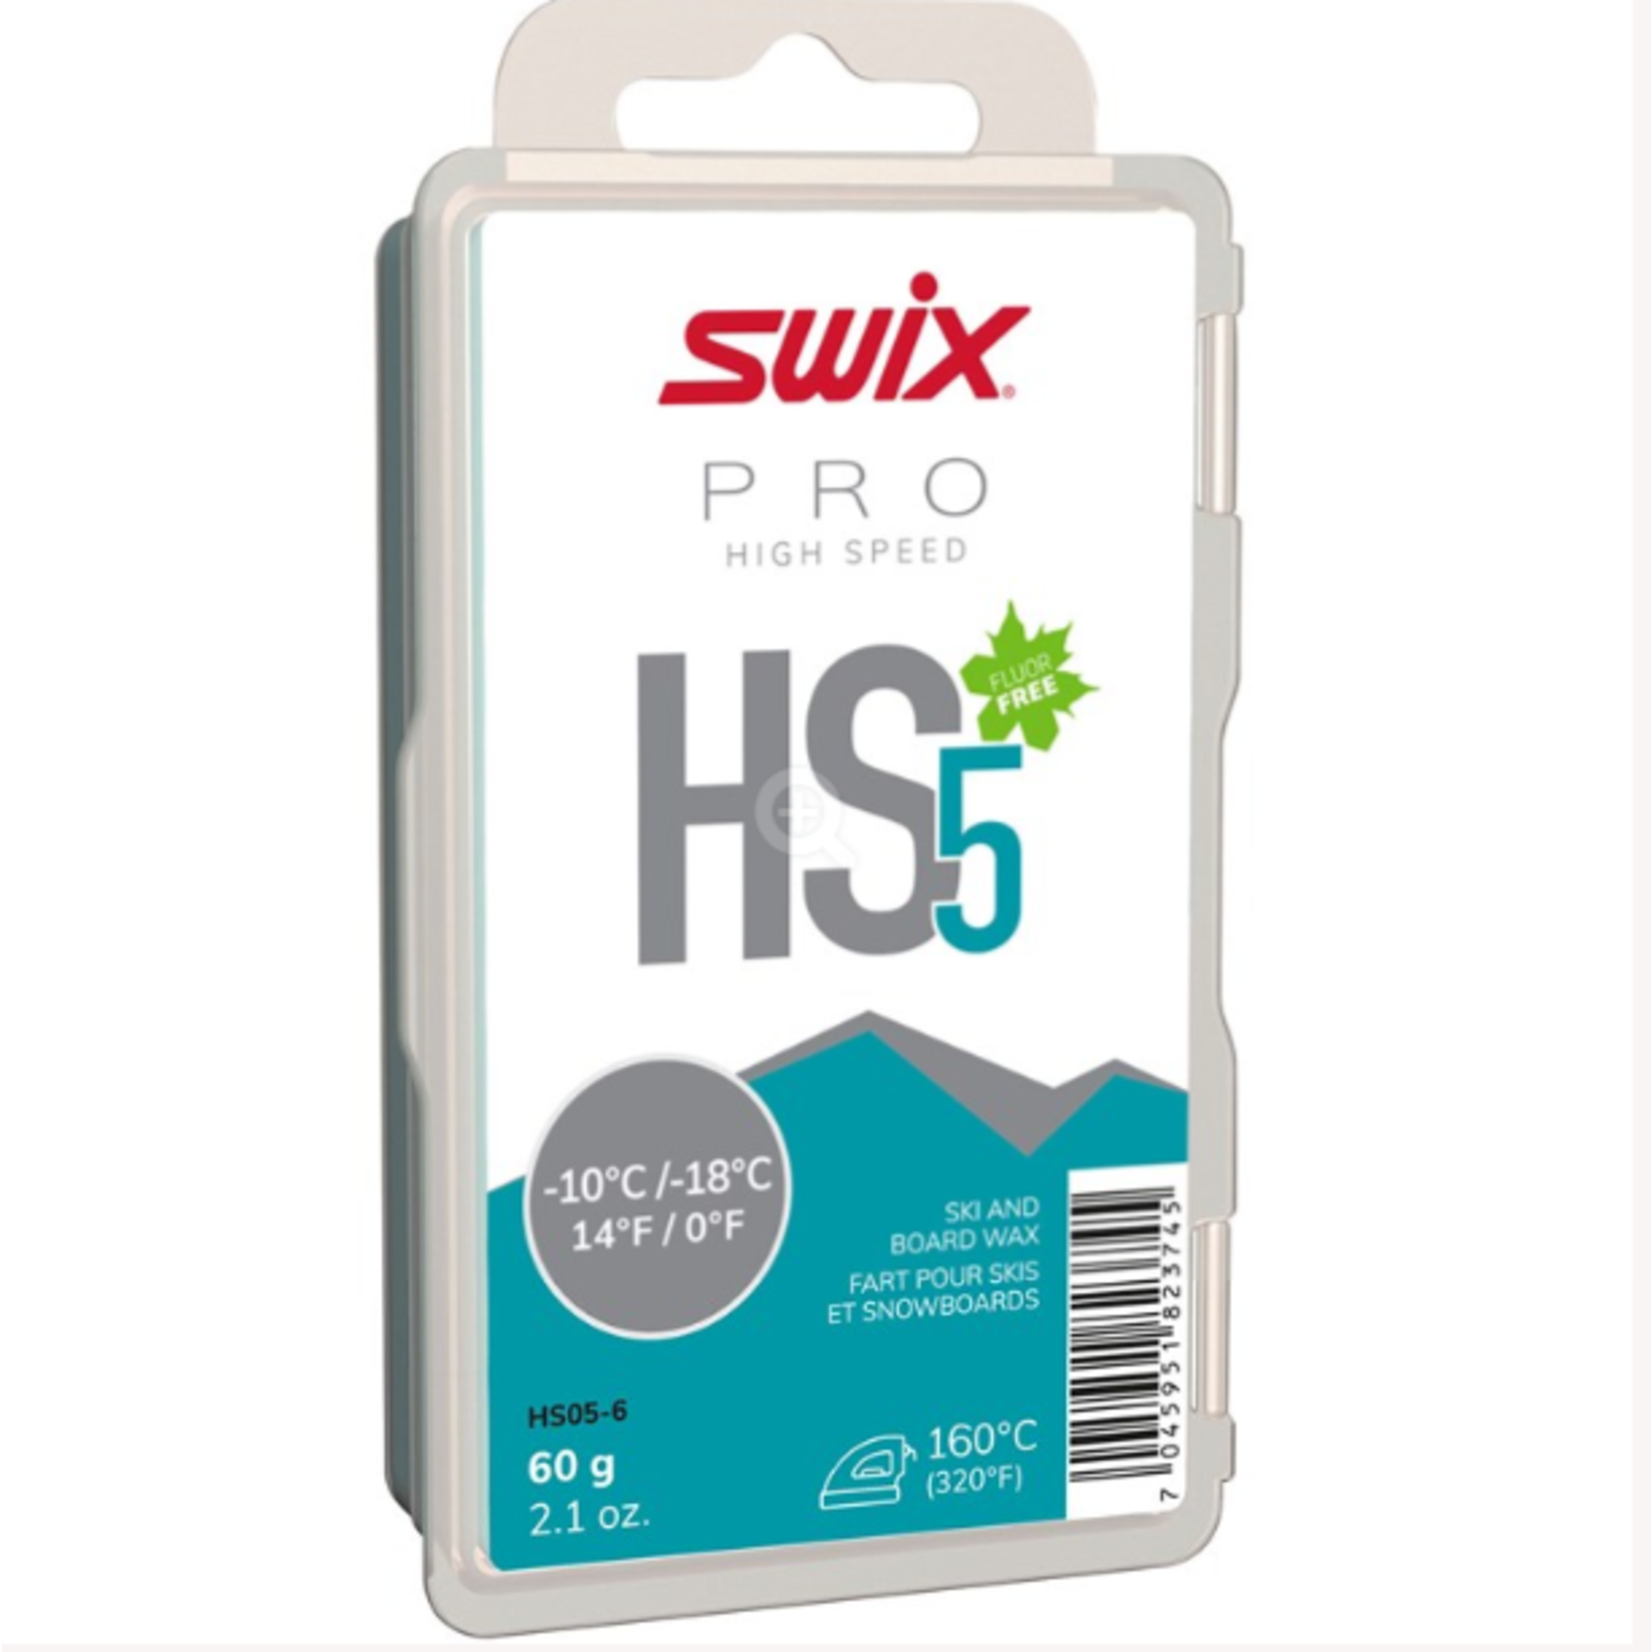 Swix Swix HS5 Turquoise, -10°C/-18°C, 60g